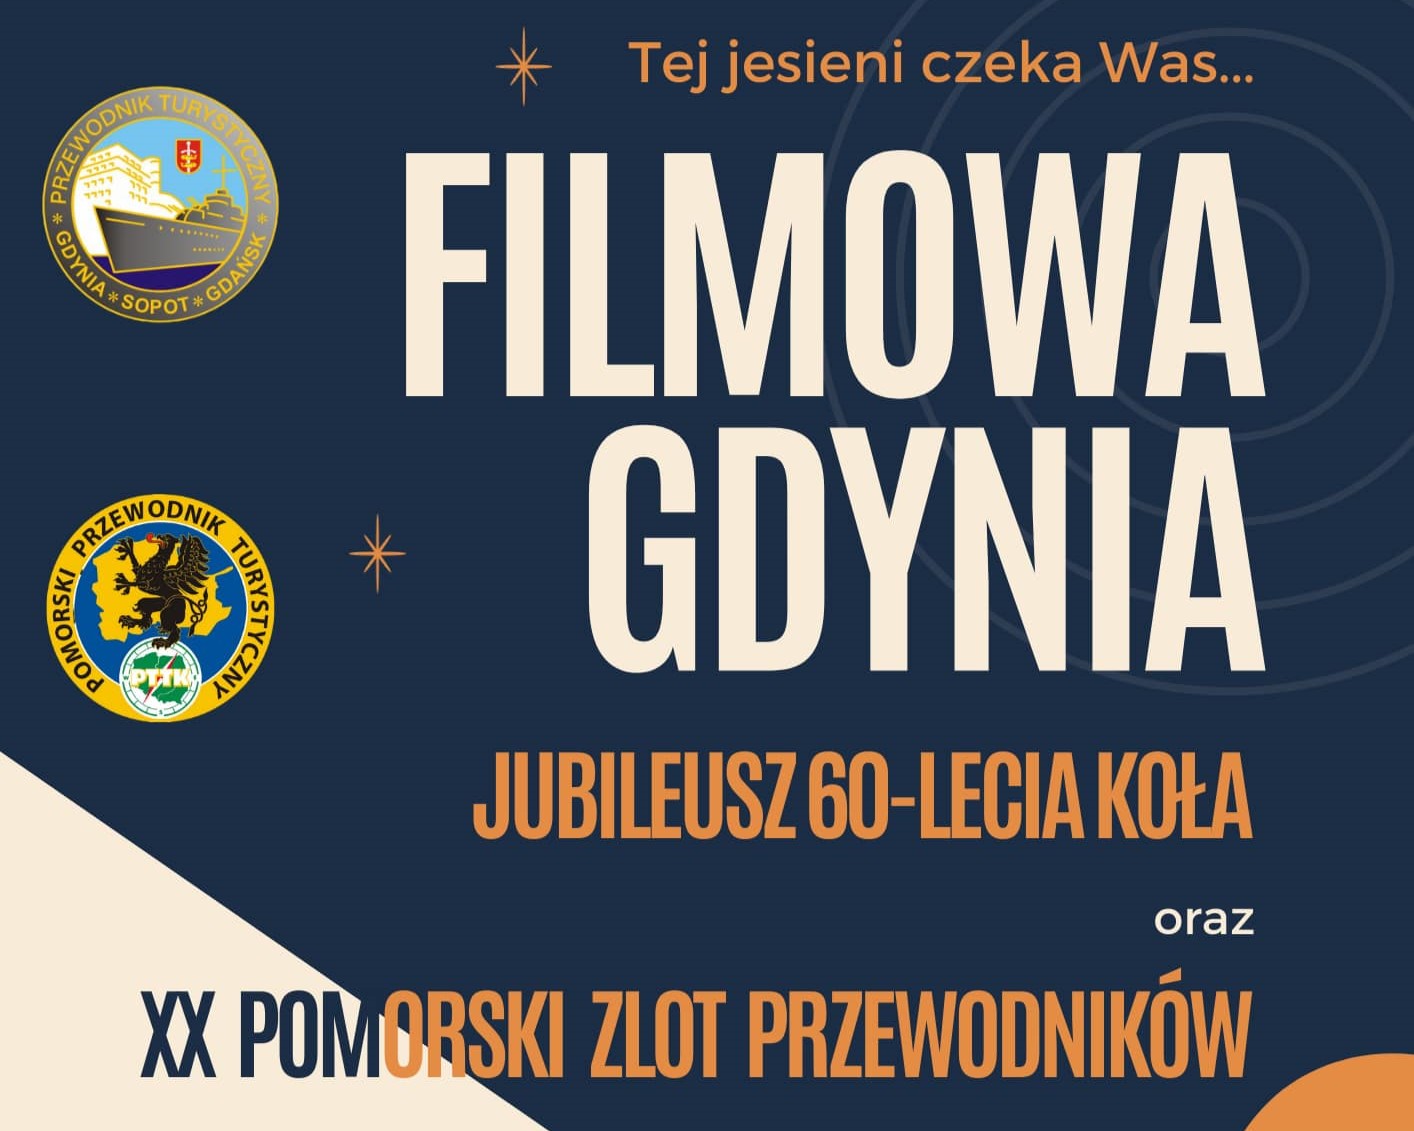 Jubileusz 60-lecia Koła Przewodników w Gdyni oraz XX Pomorski Zlot Przewodników „Filmowa Gdynia”